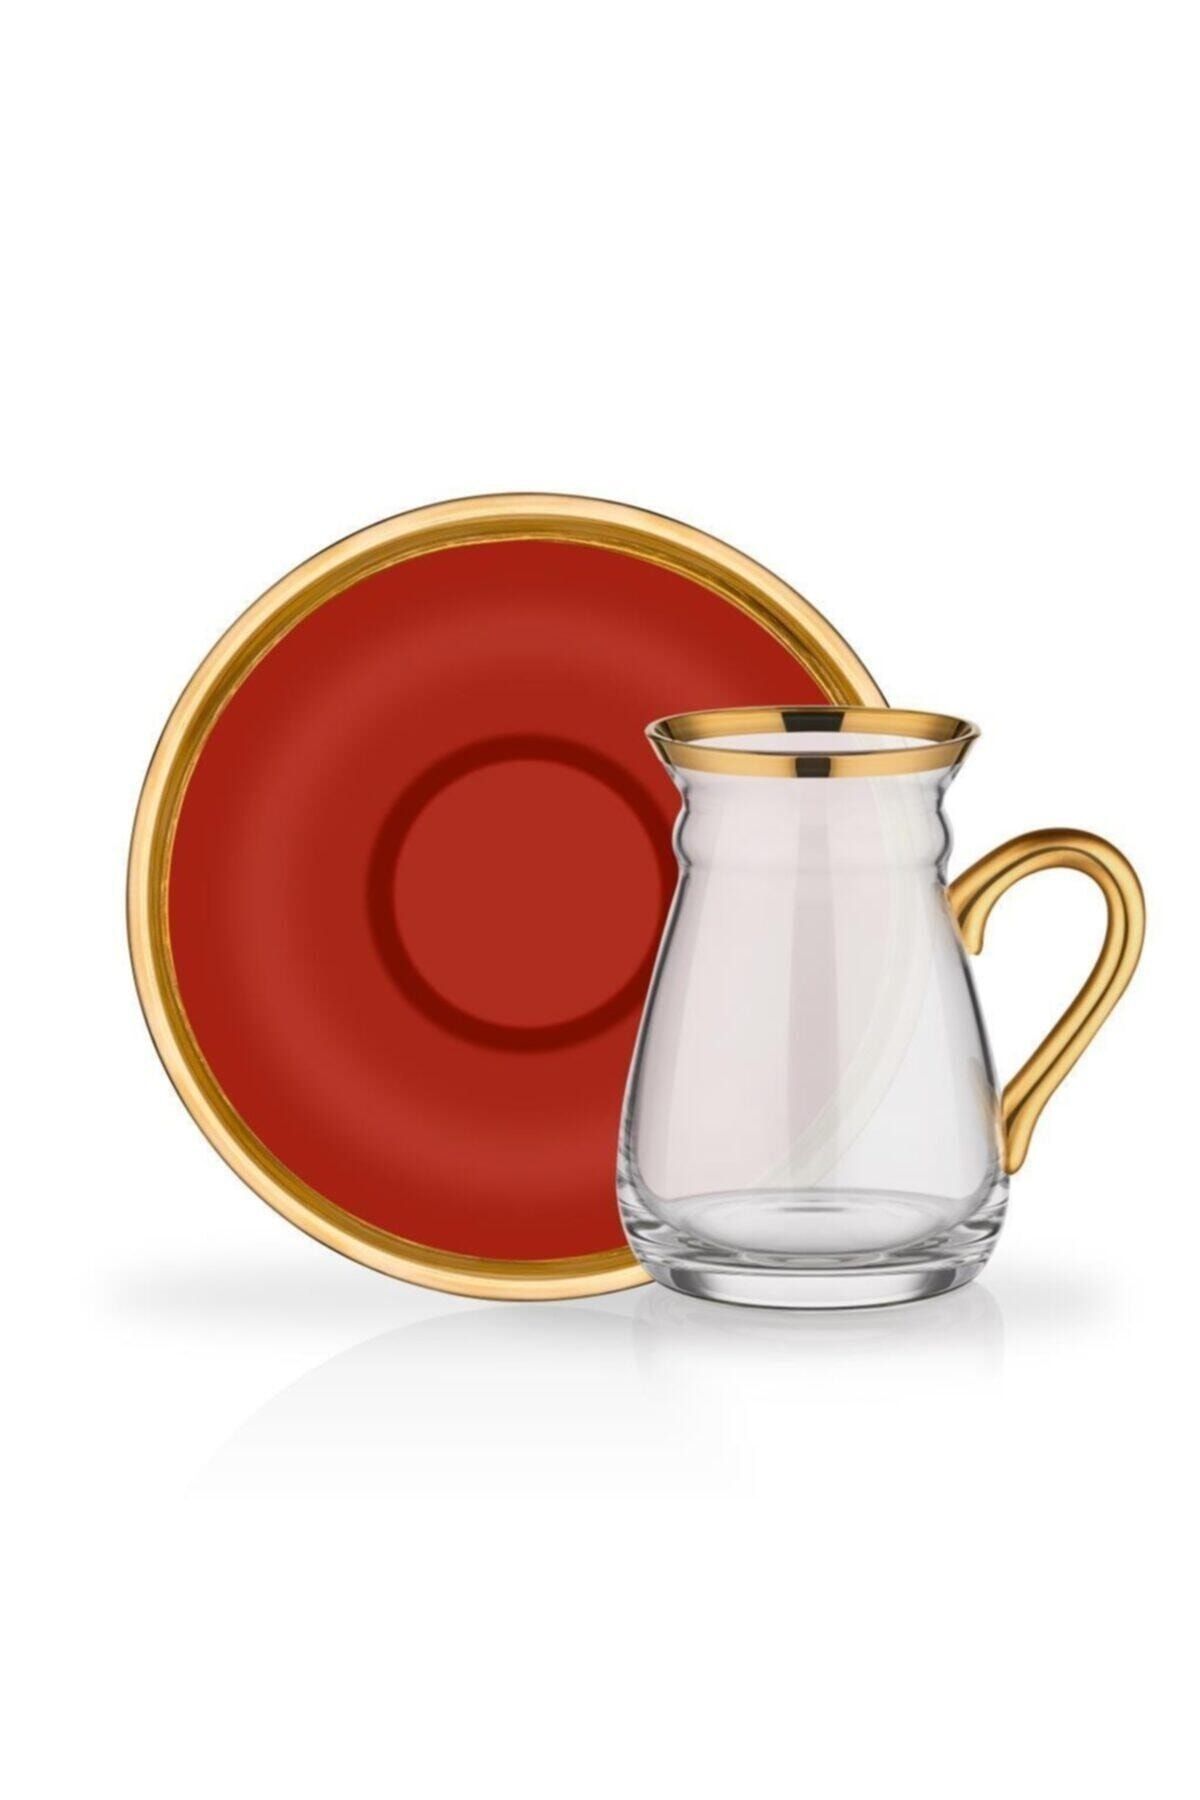 Glore Camıllow Kırmızı Kulplu Çay Seti 6 Kişilik